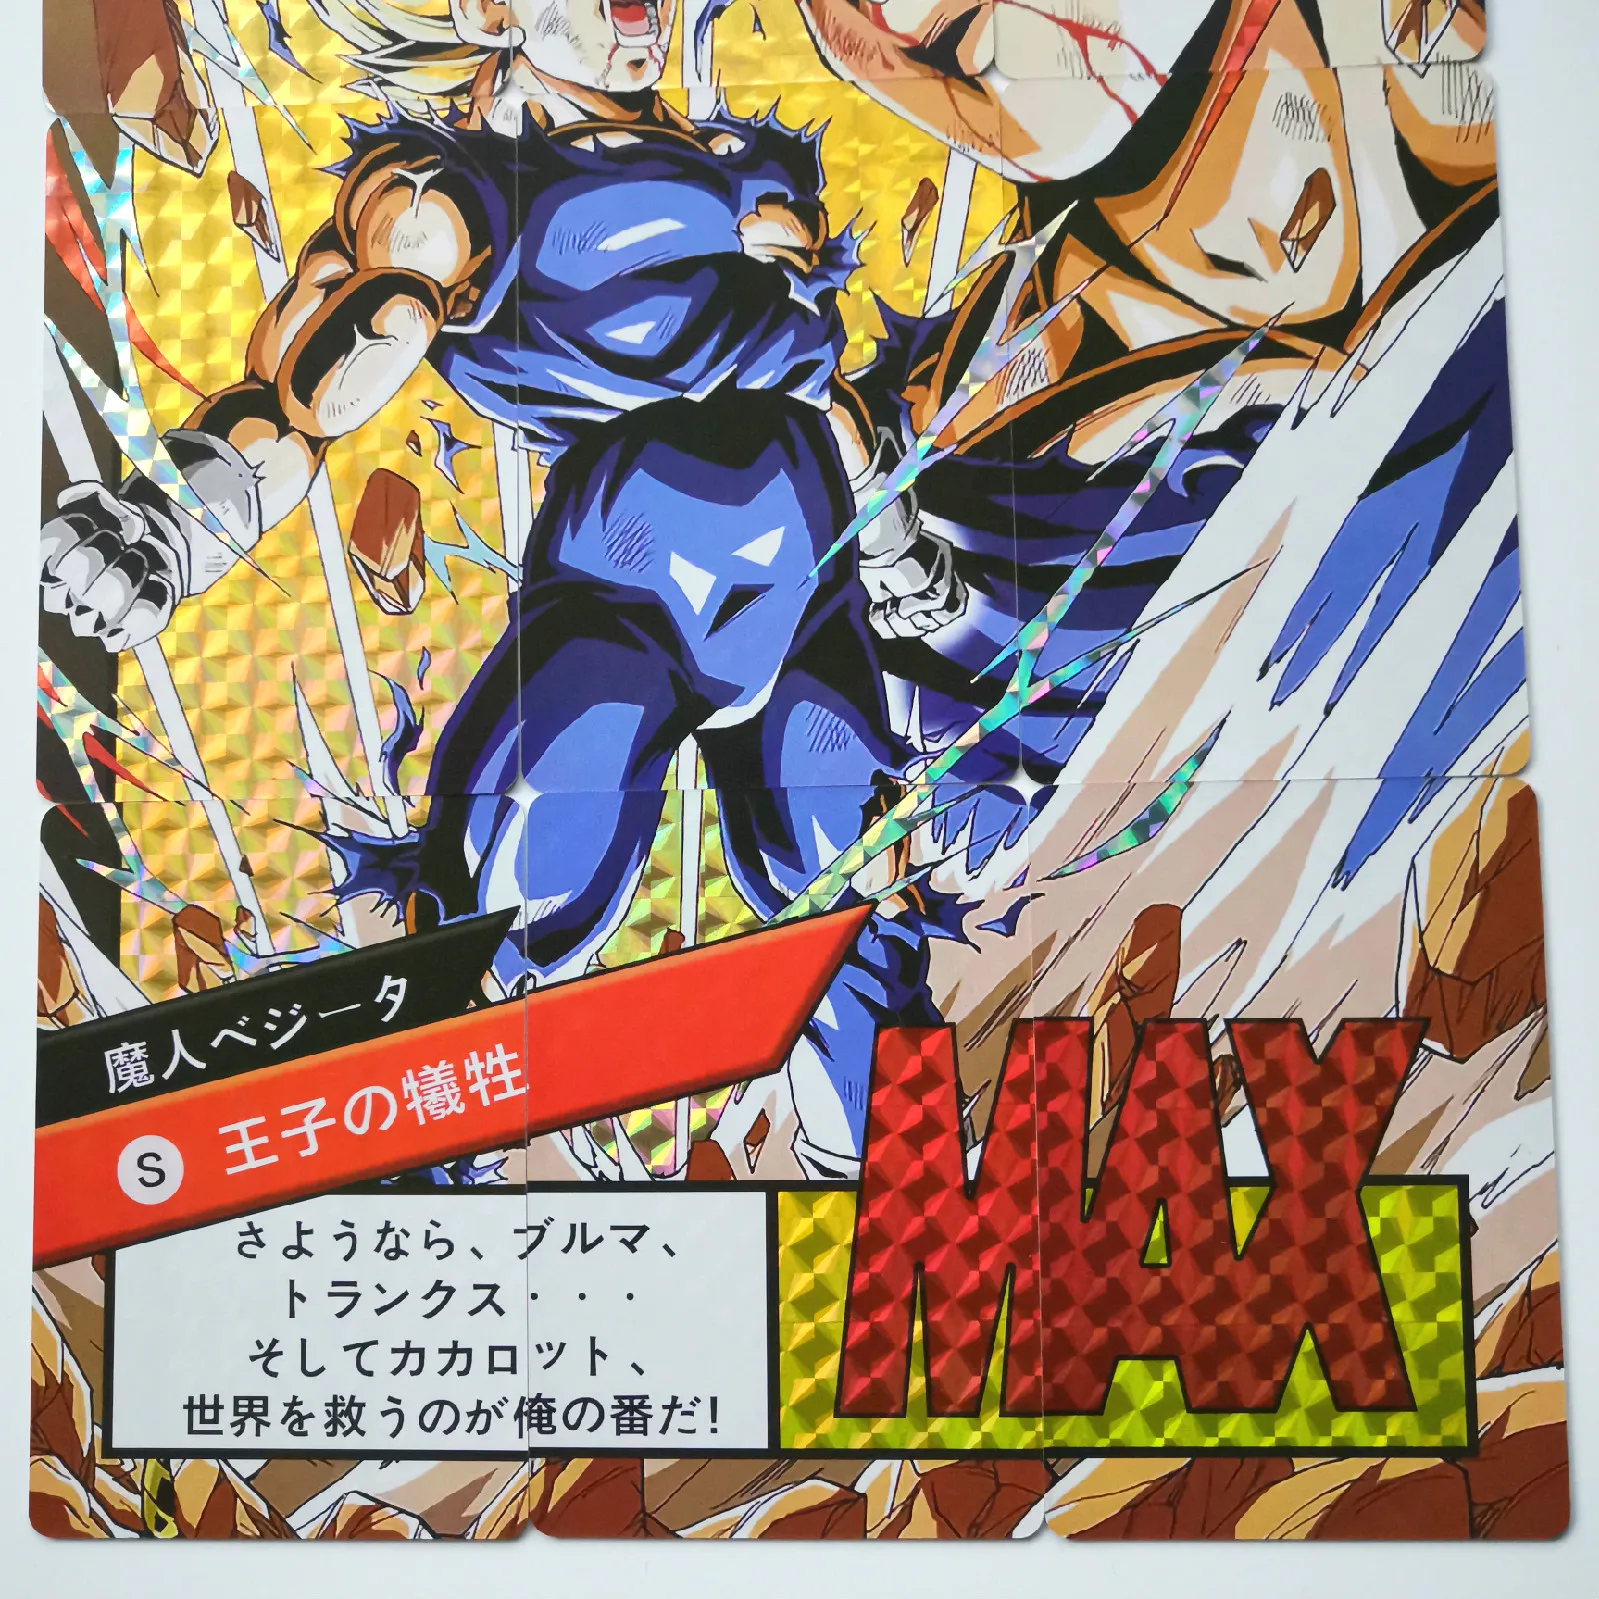 9 шт. супер Dragon Ball-Z Heroes Боевая карточка Ultra Instinct Goku Vegeta супер игровая Коллекция аниме-открытки